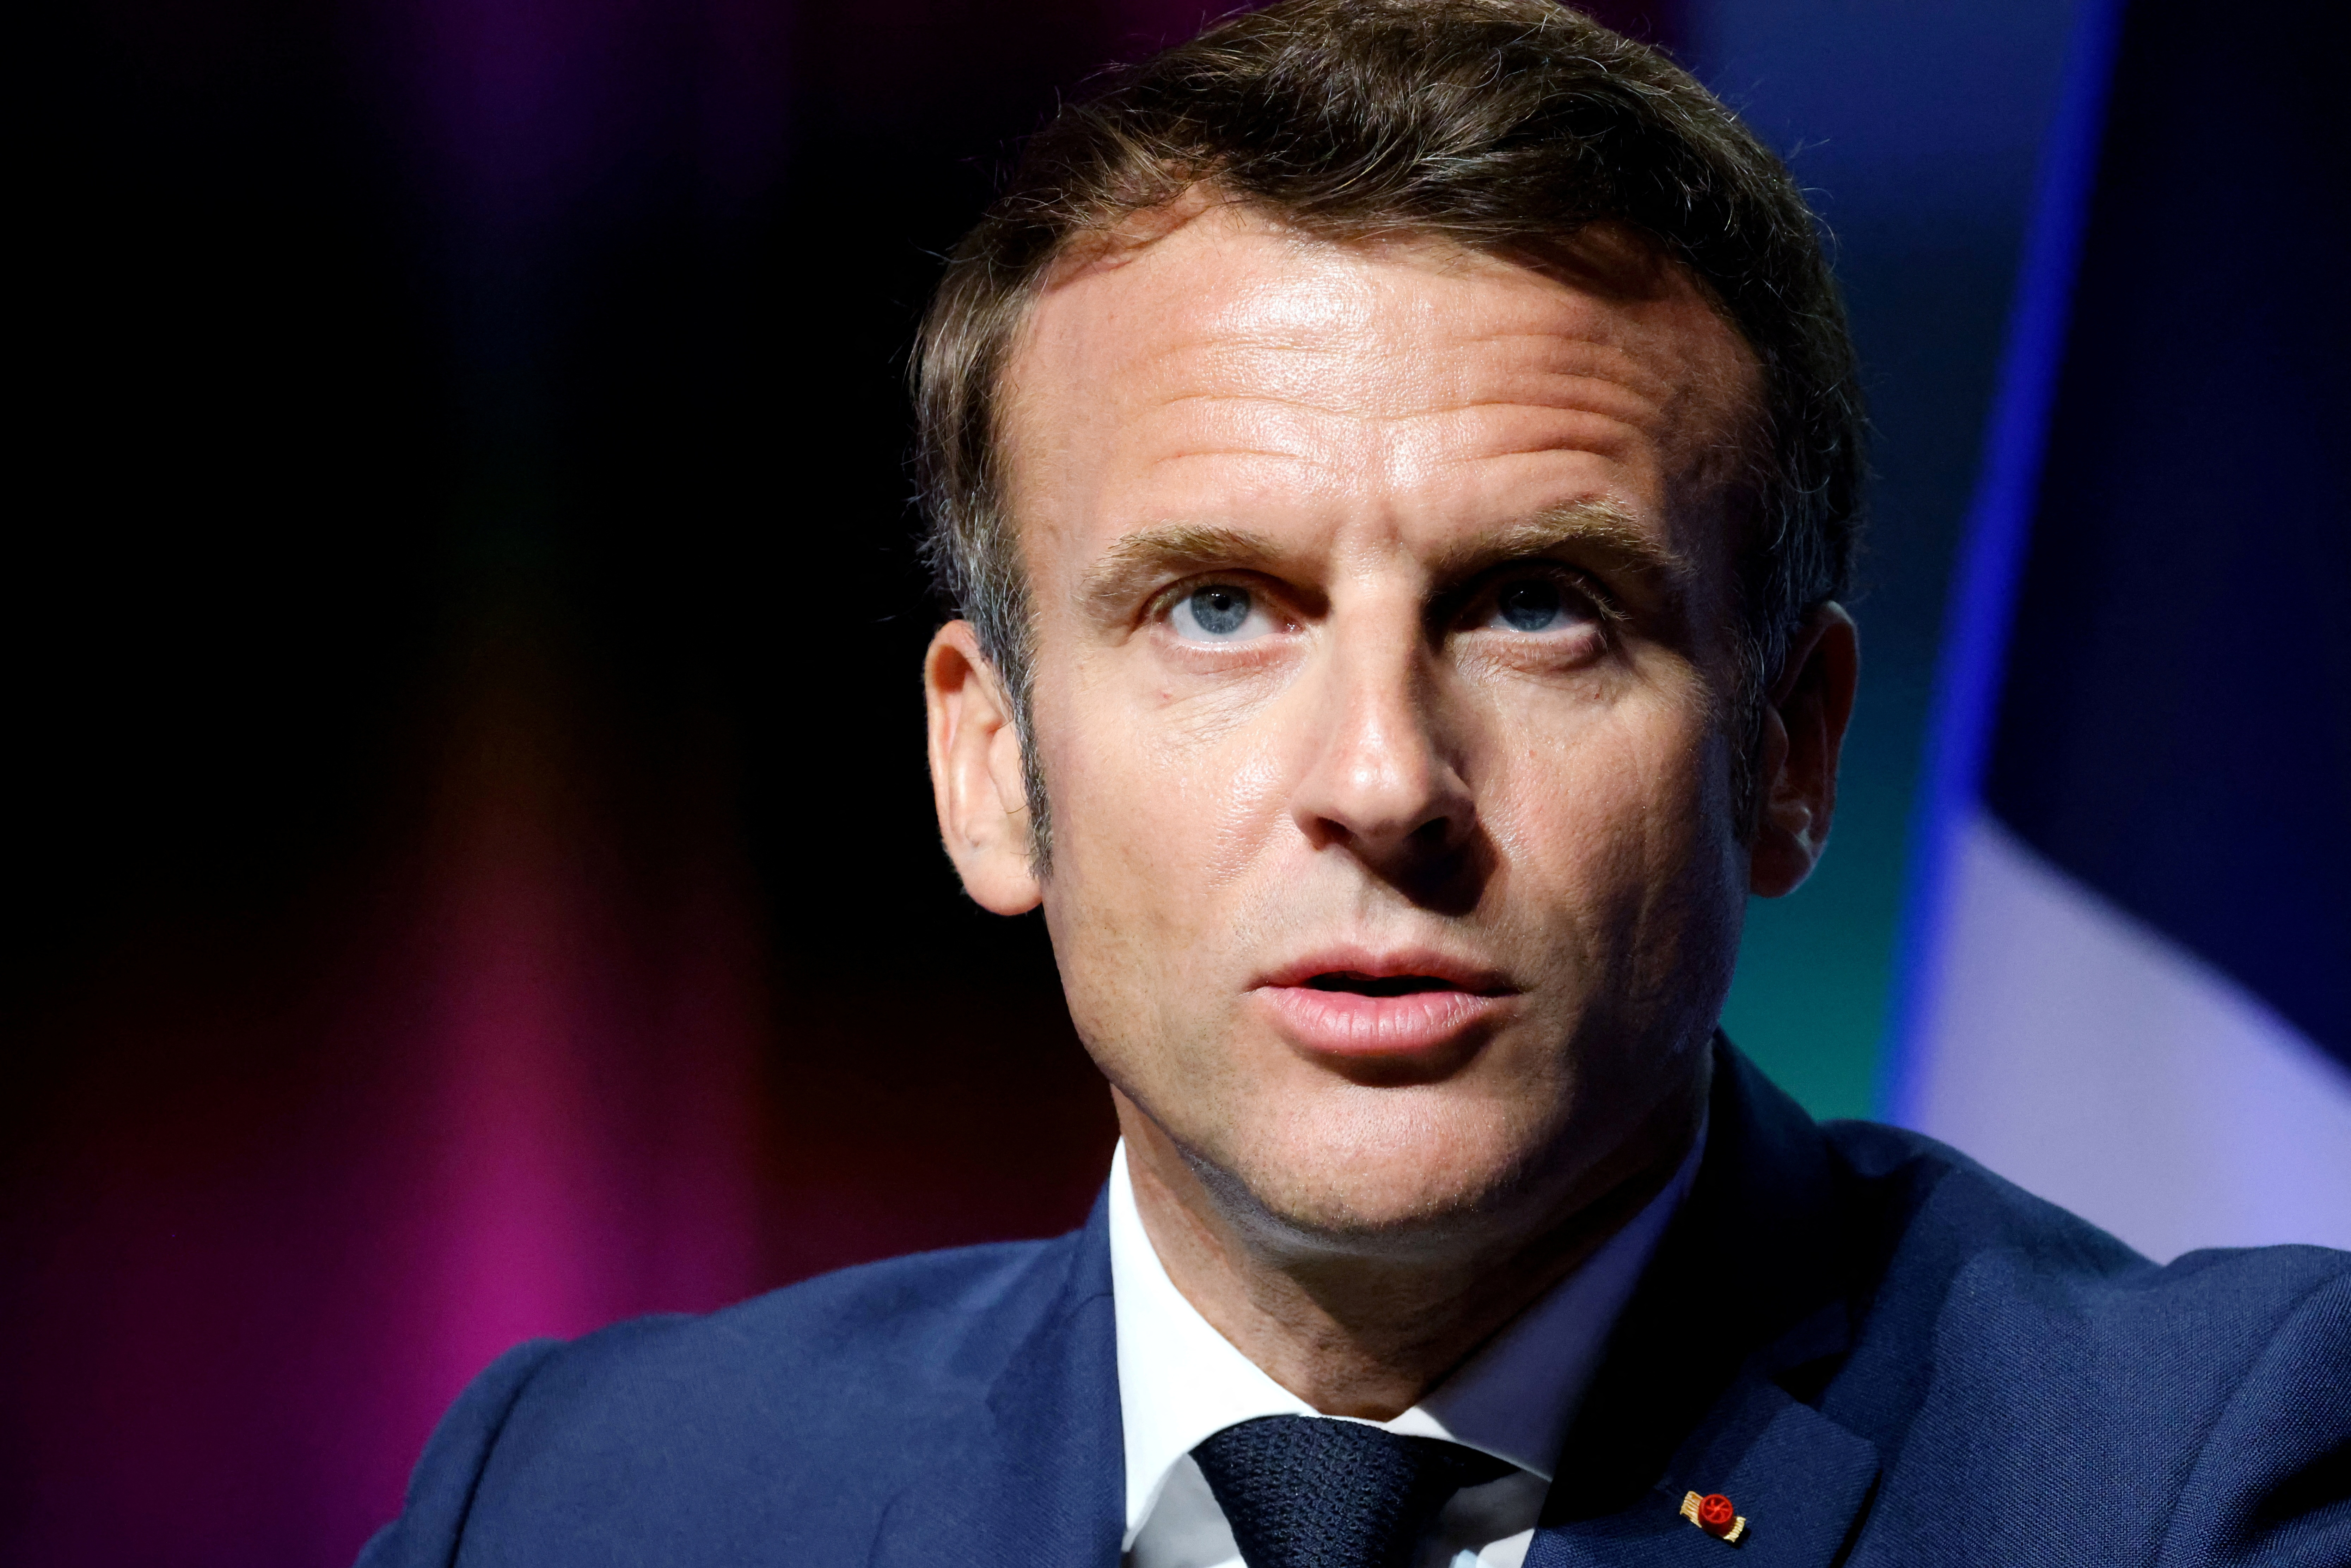 Macron tire à boulets rouges sur le marché européen de l'électricité et le calcul « absurde » des prix